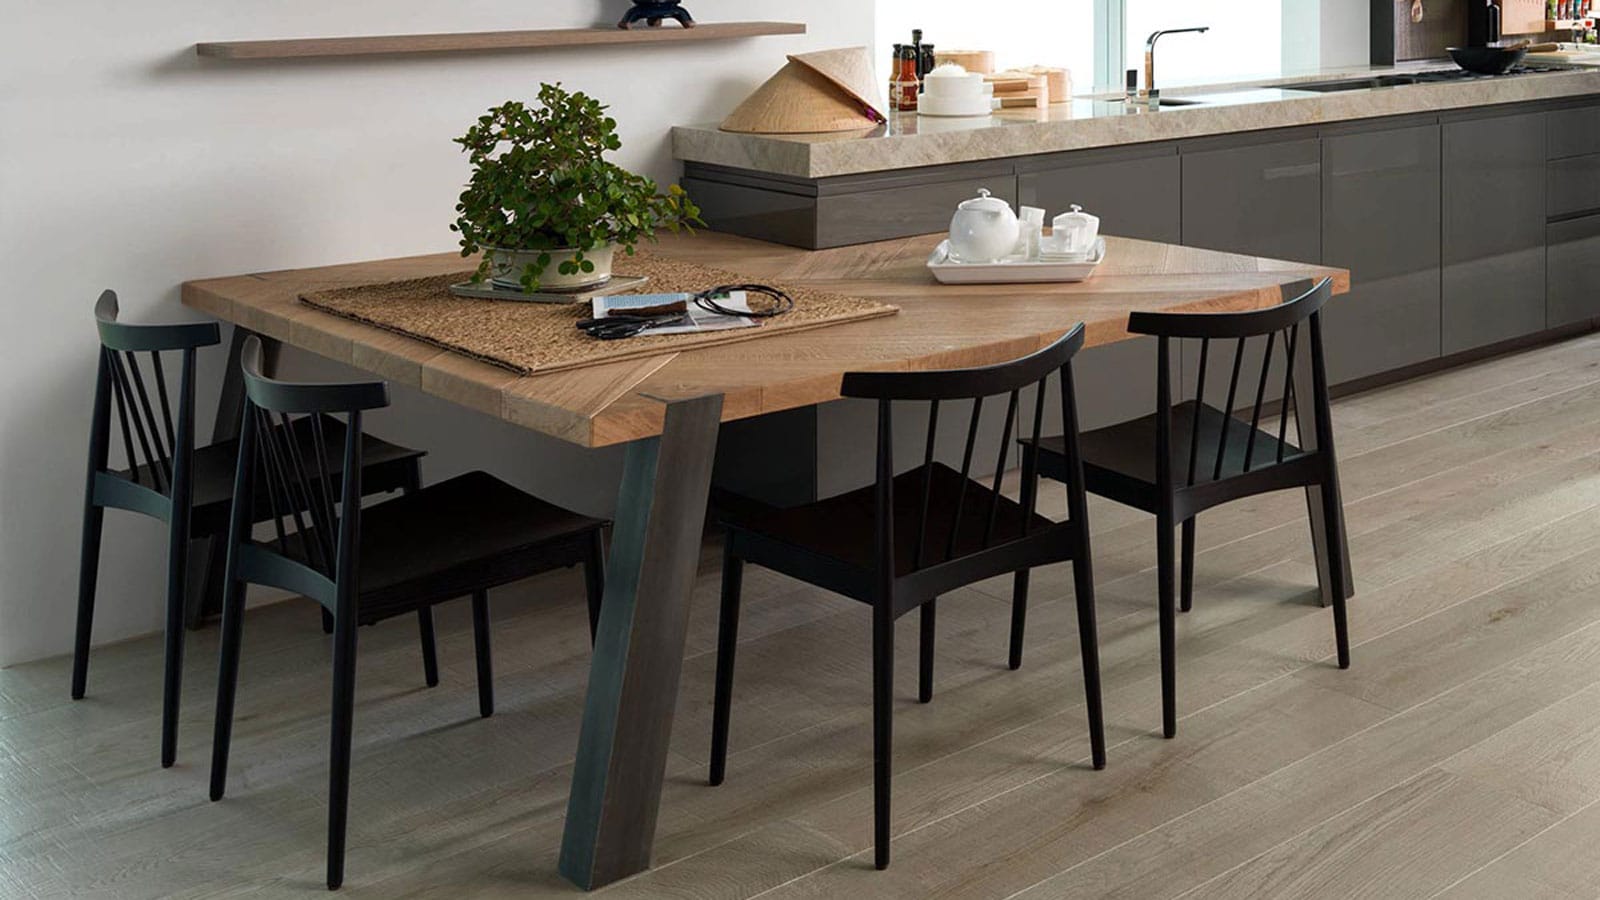 Las mesas altas de cocina: Una opción diferente y decorativa